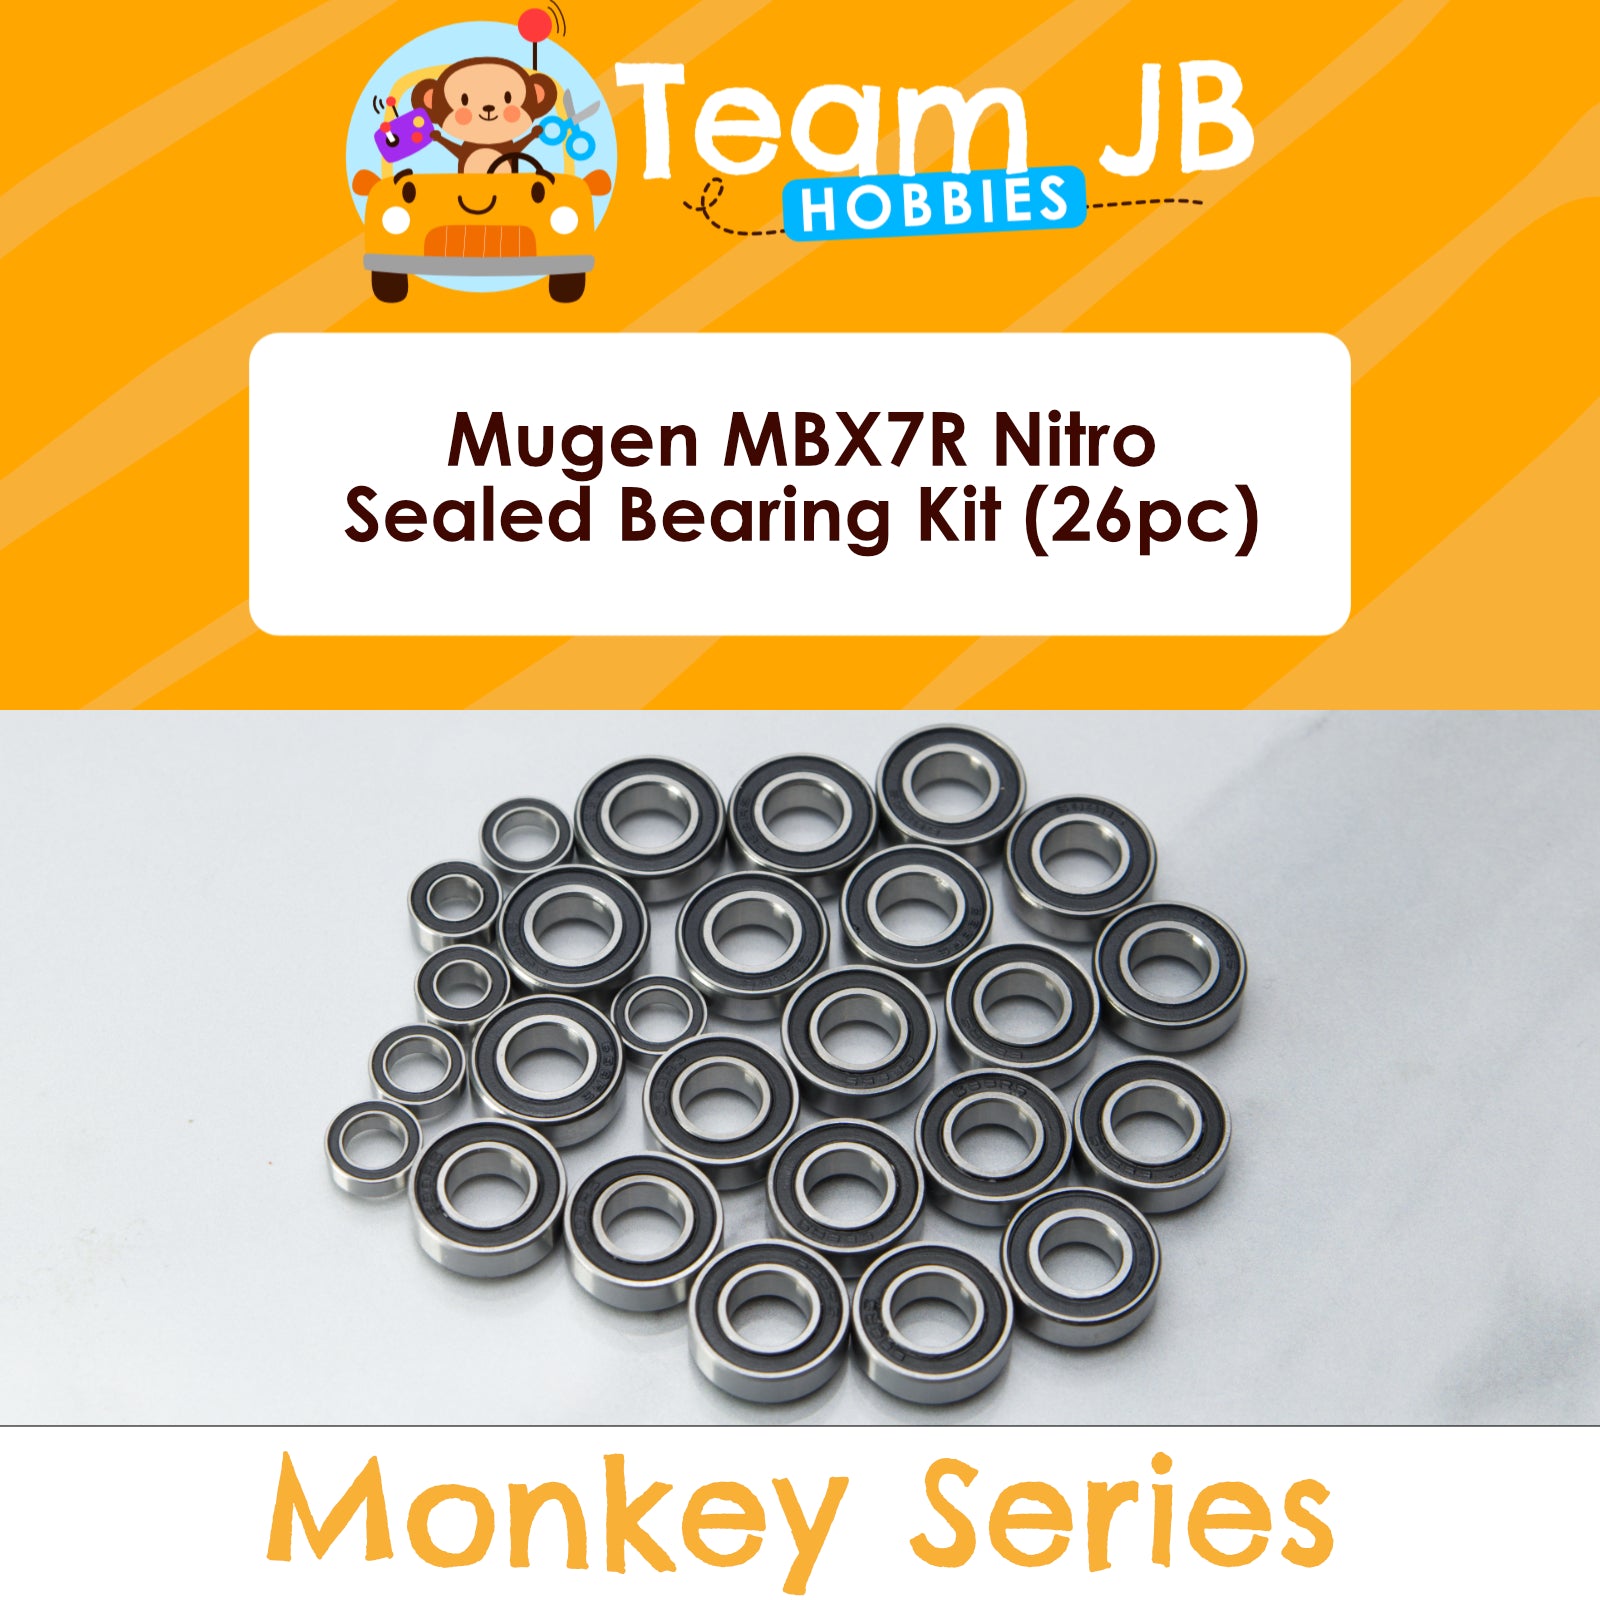 Mugen MBX7R Nitro - Sealed Bearing Kit